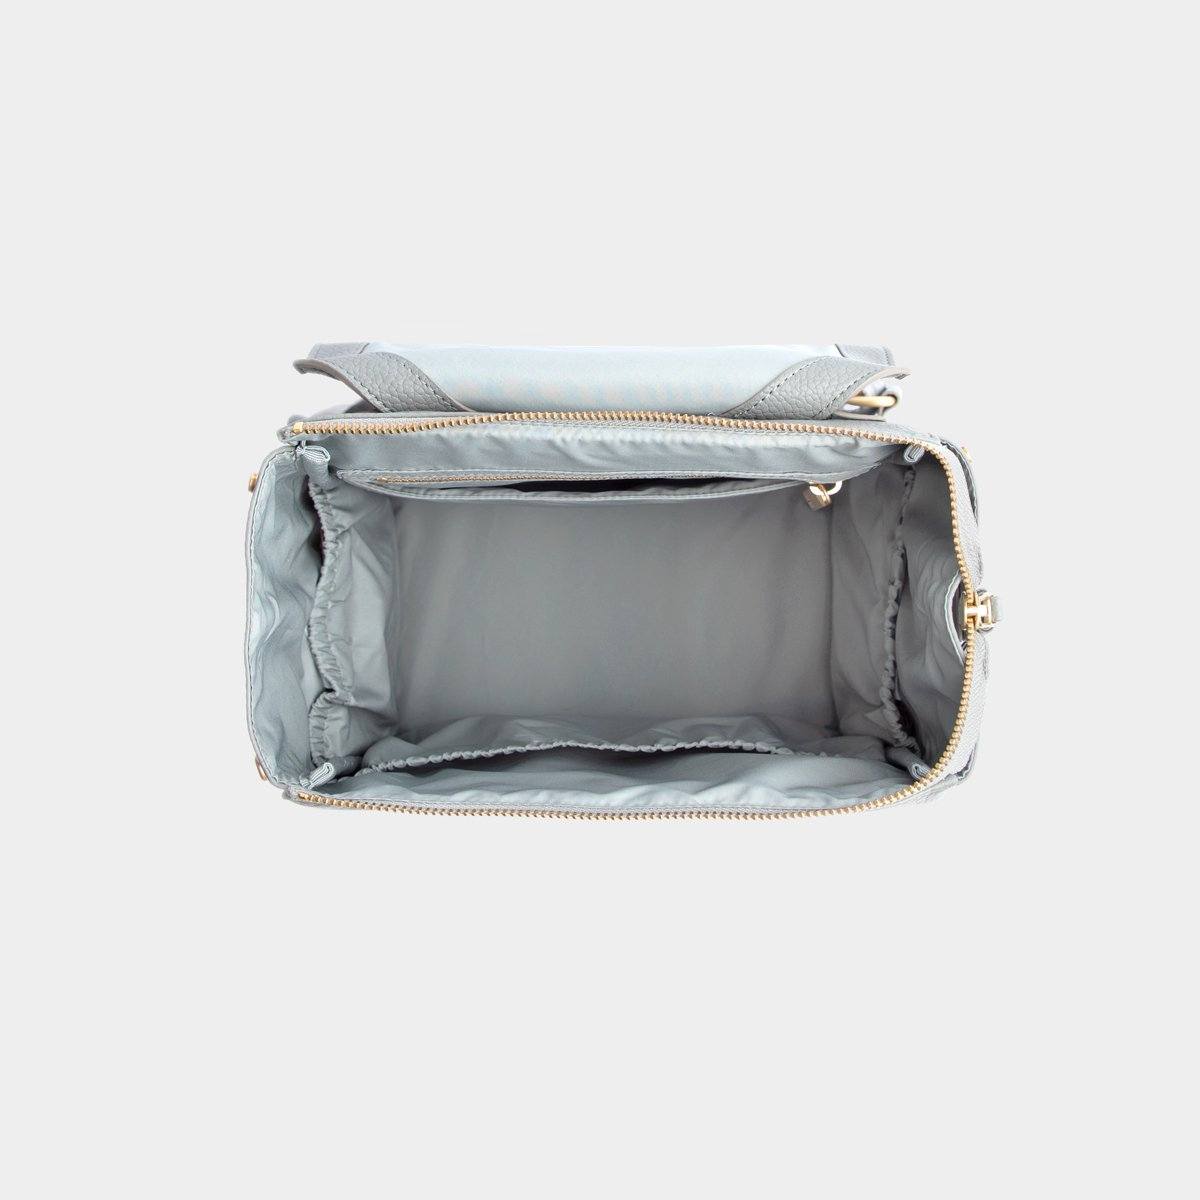 Heather Classic Diaper Bag II – Freshly Picked